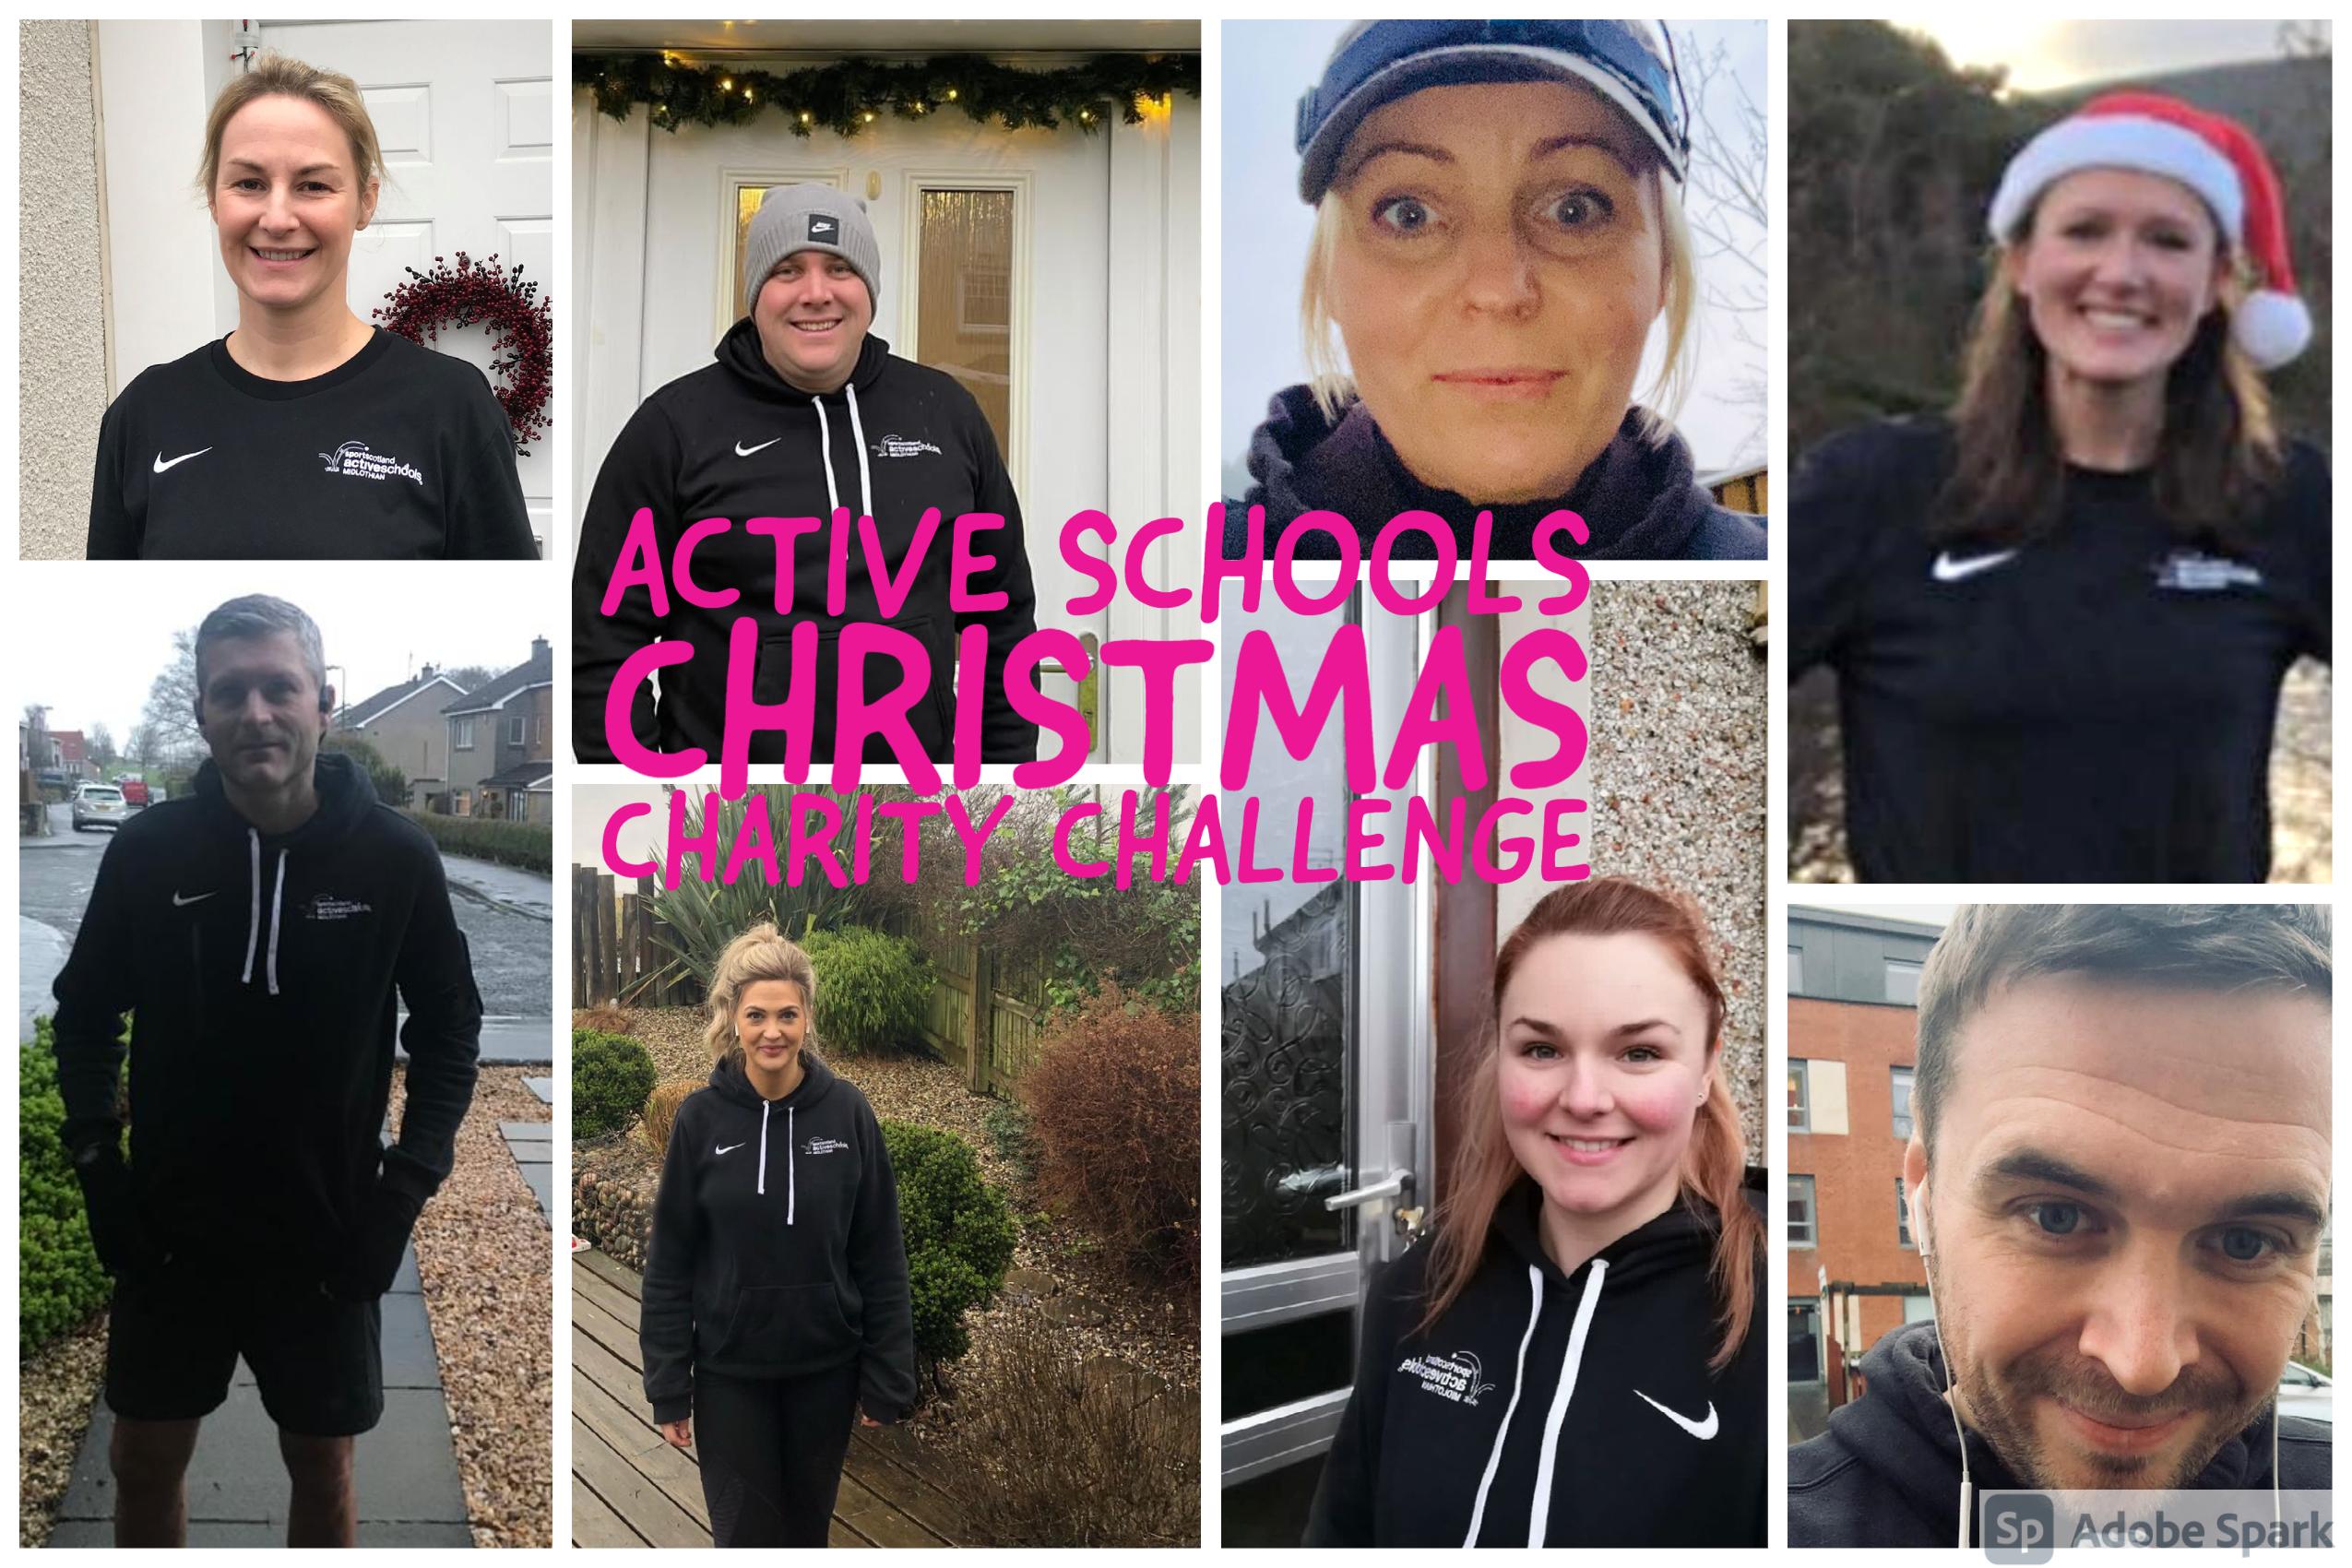 Active Schools Charity Challenge